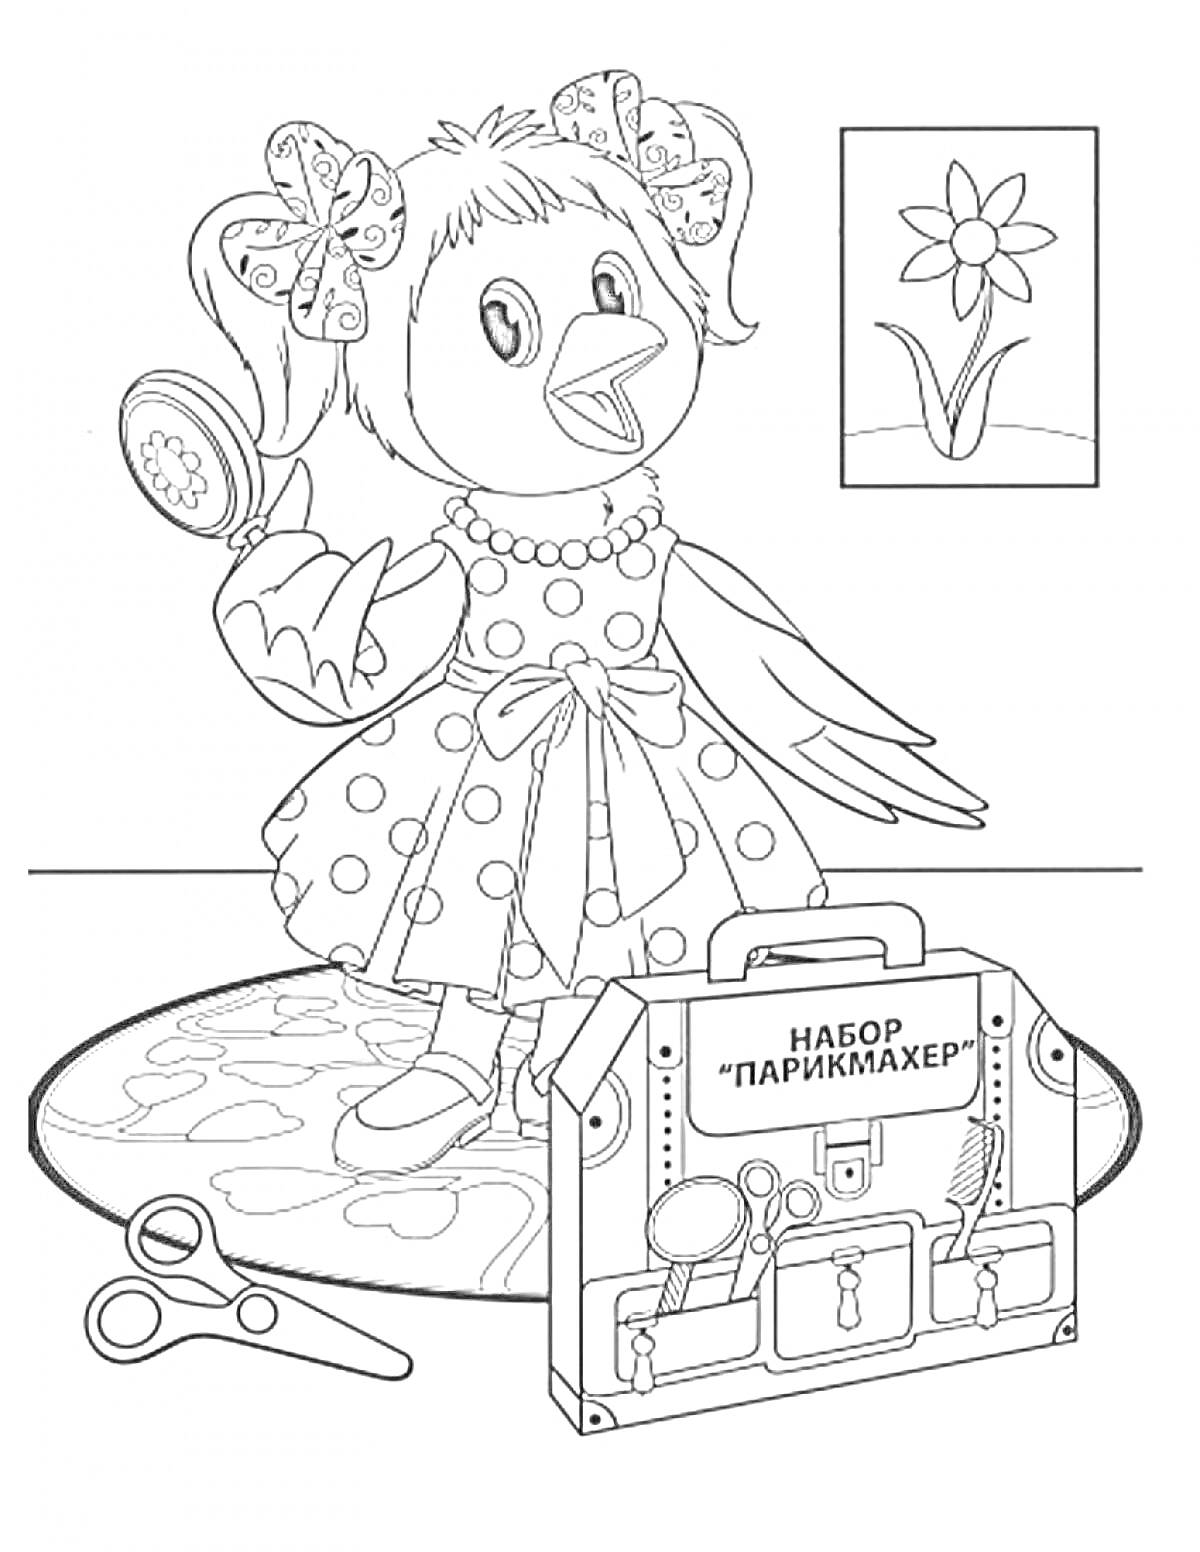 Раскраска Птичка с бантом в платье, набор парикмахера, ножницы и картина с цветком